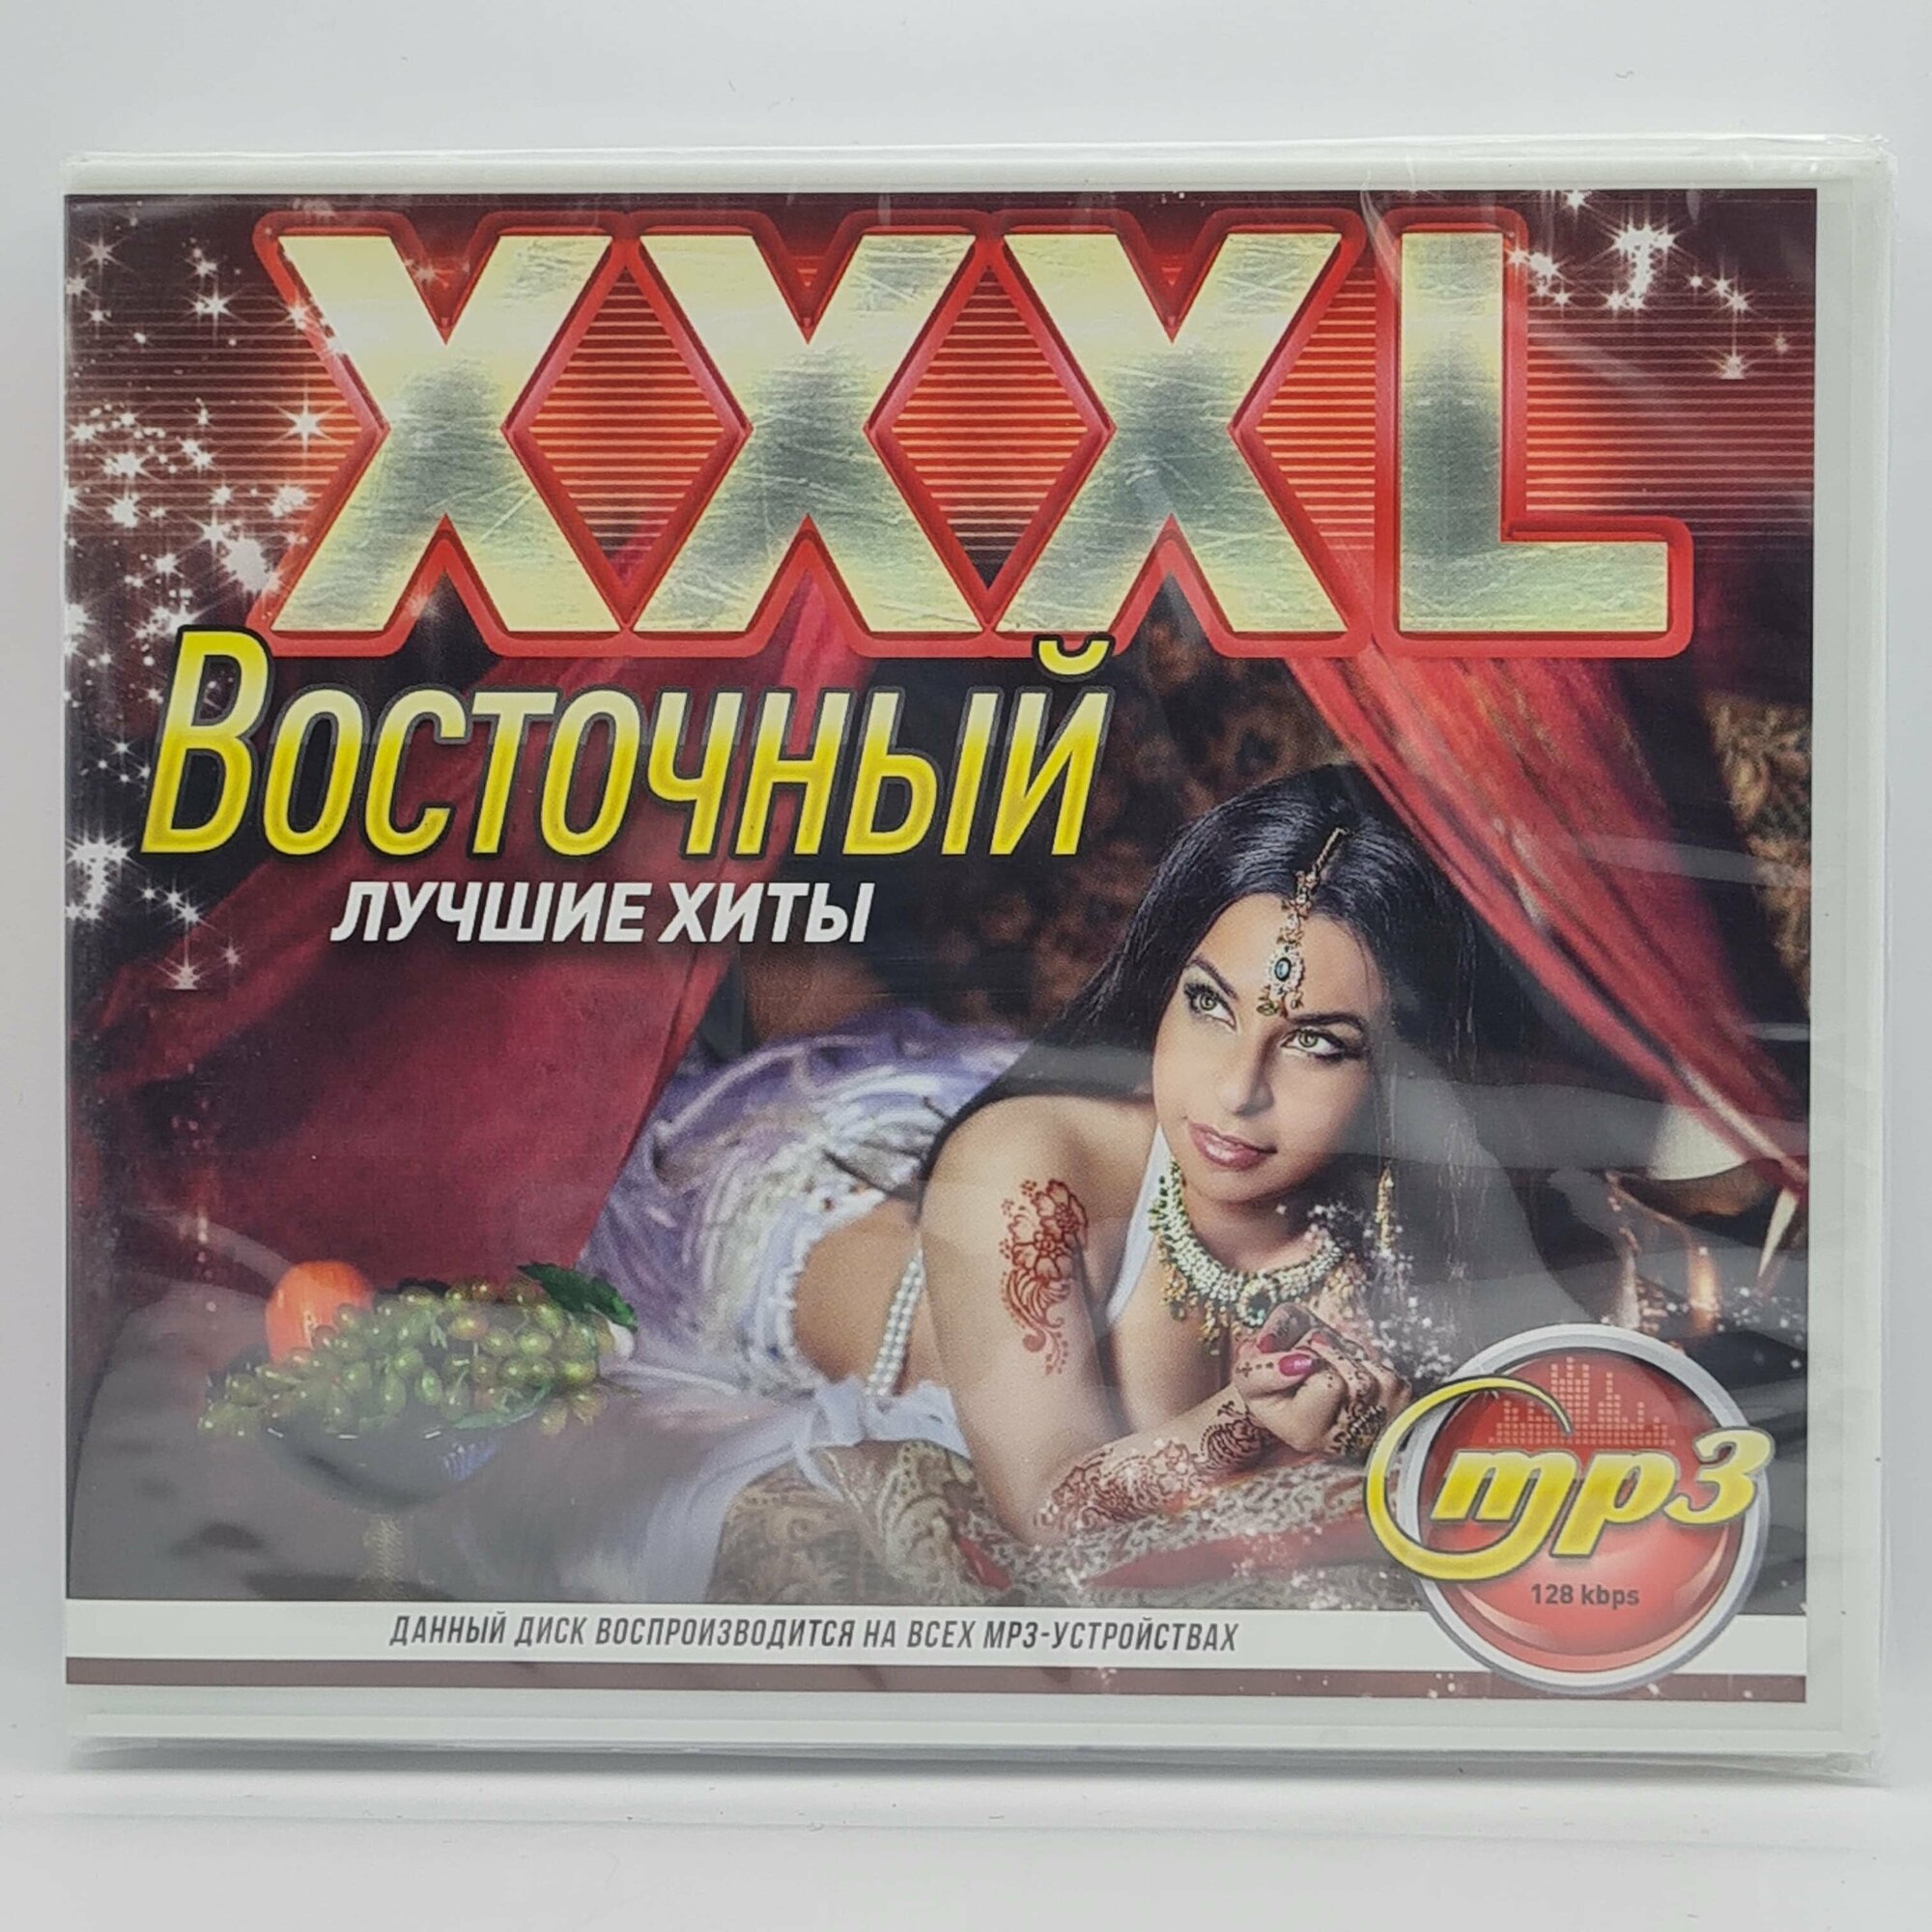 XXXL Восточный (MP3)